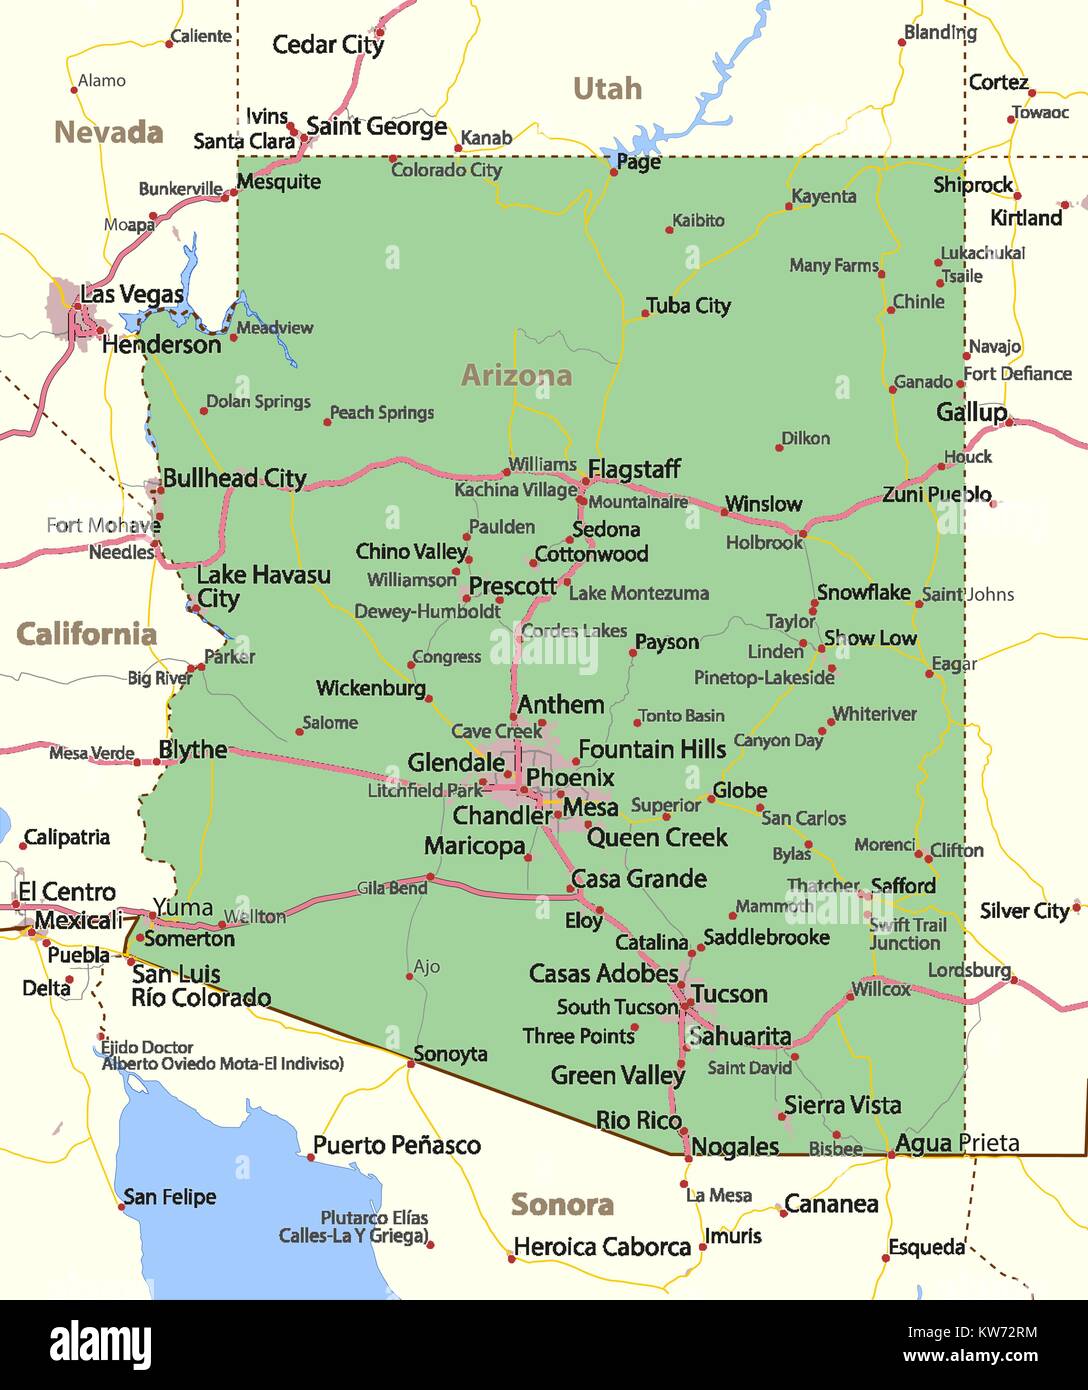 Mappa di Arizona. Mostra i confini, zone urbane, nomi di località, strade e autostrade. Proiezione: proiezione di Mercatore. Illustrazione Vettoriale